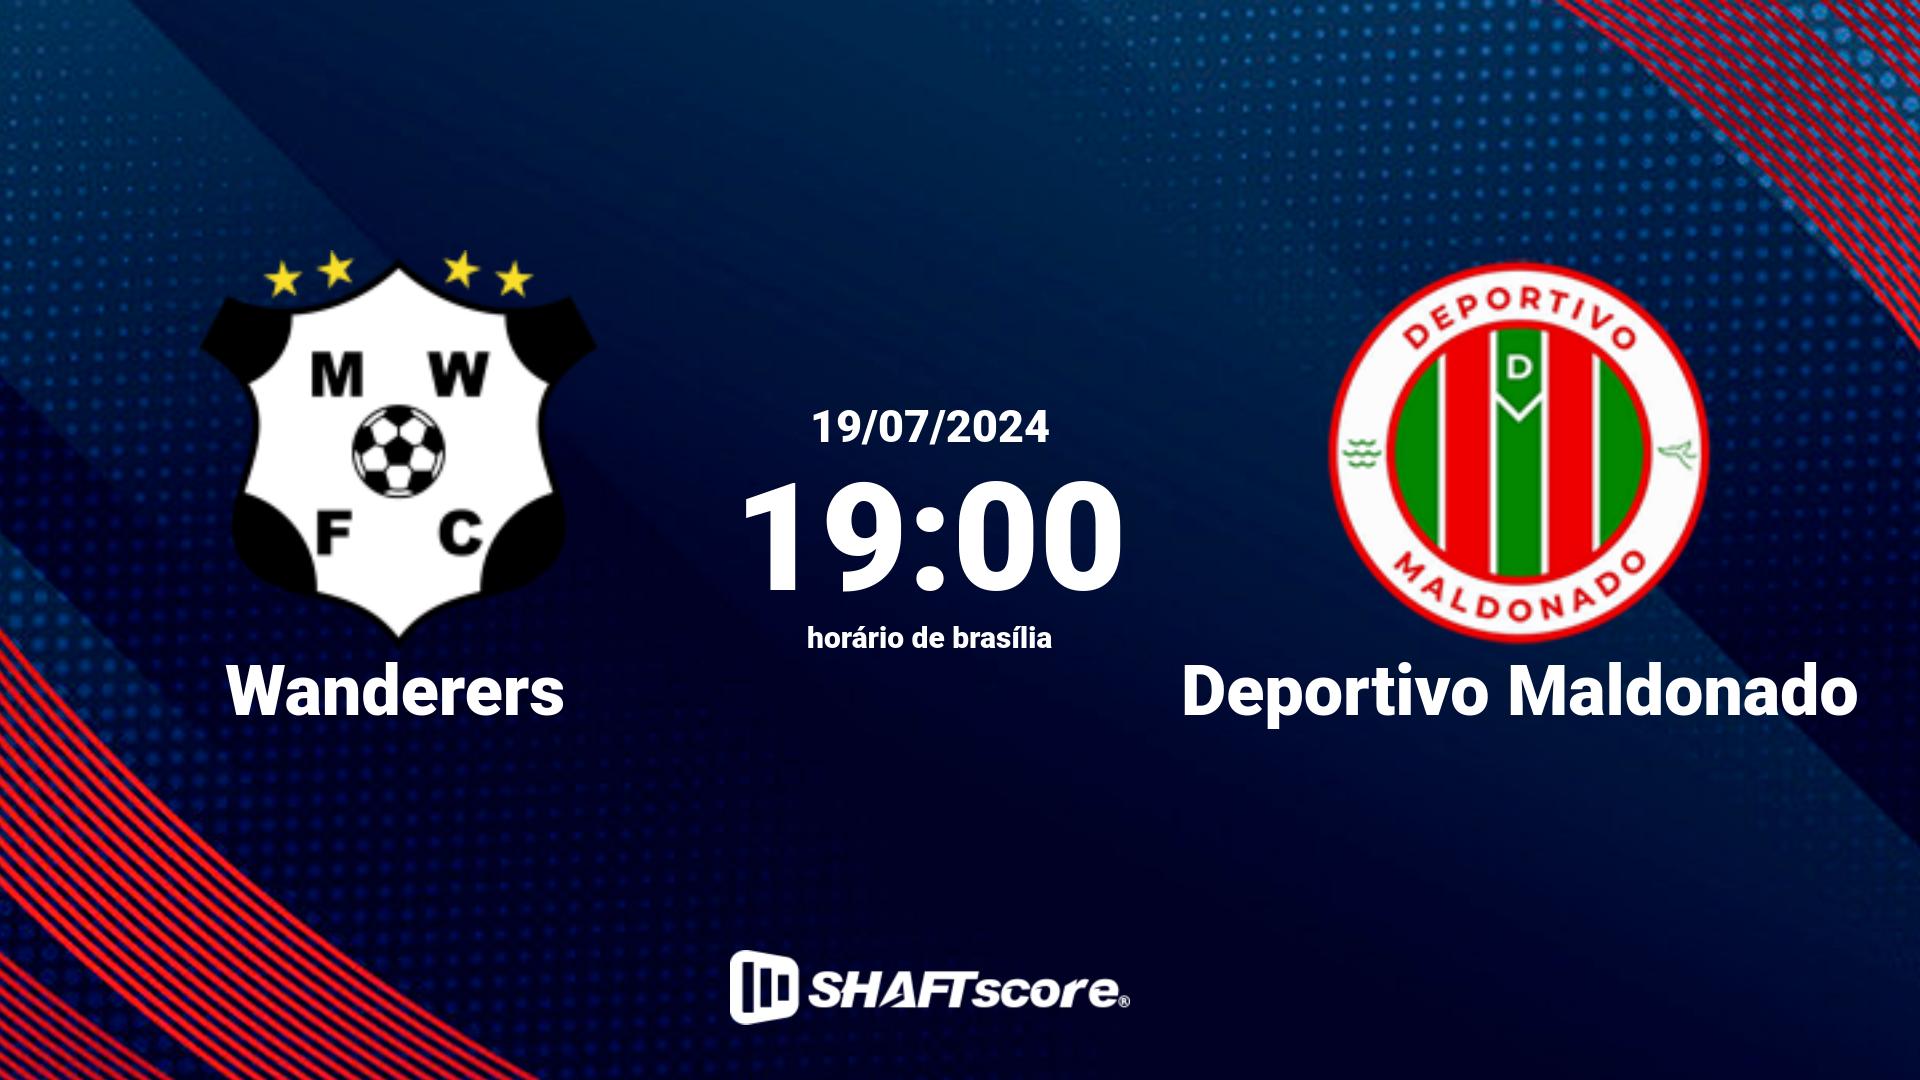 Estatísticas do jogo Wanderers vs Deportivo Maldonado 19.07 19:00